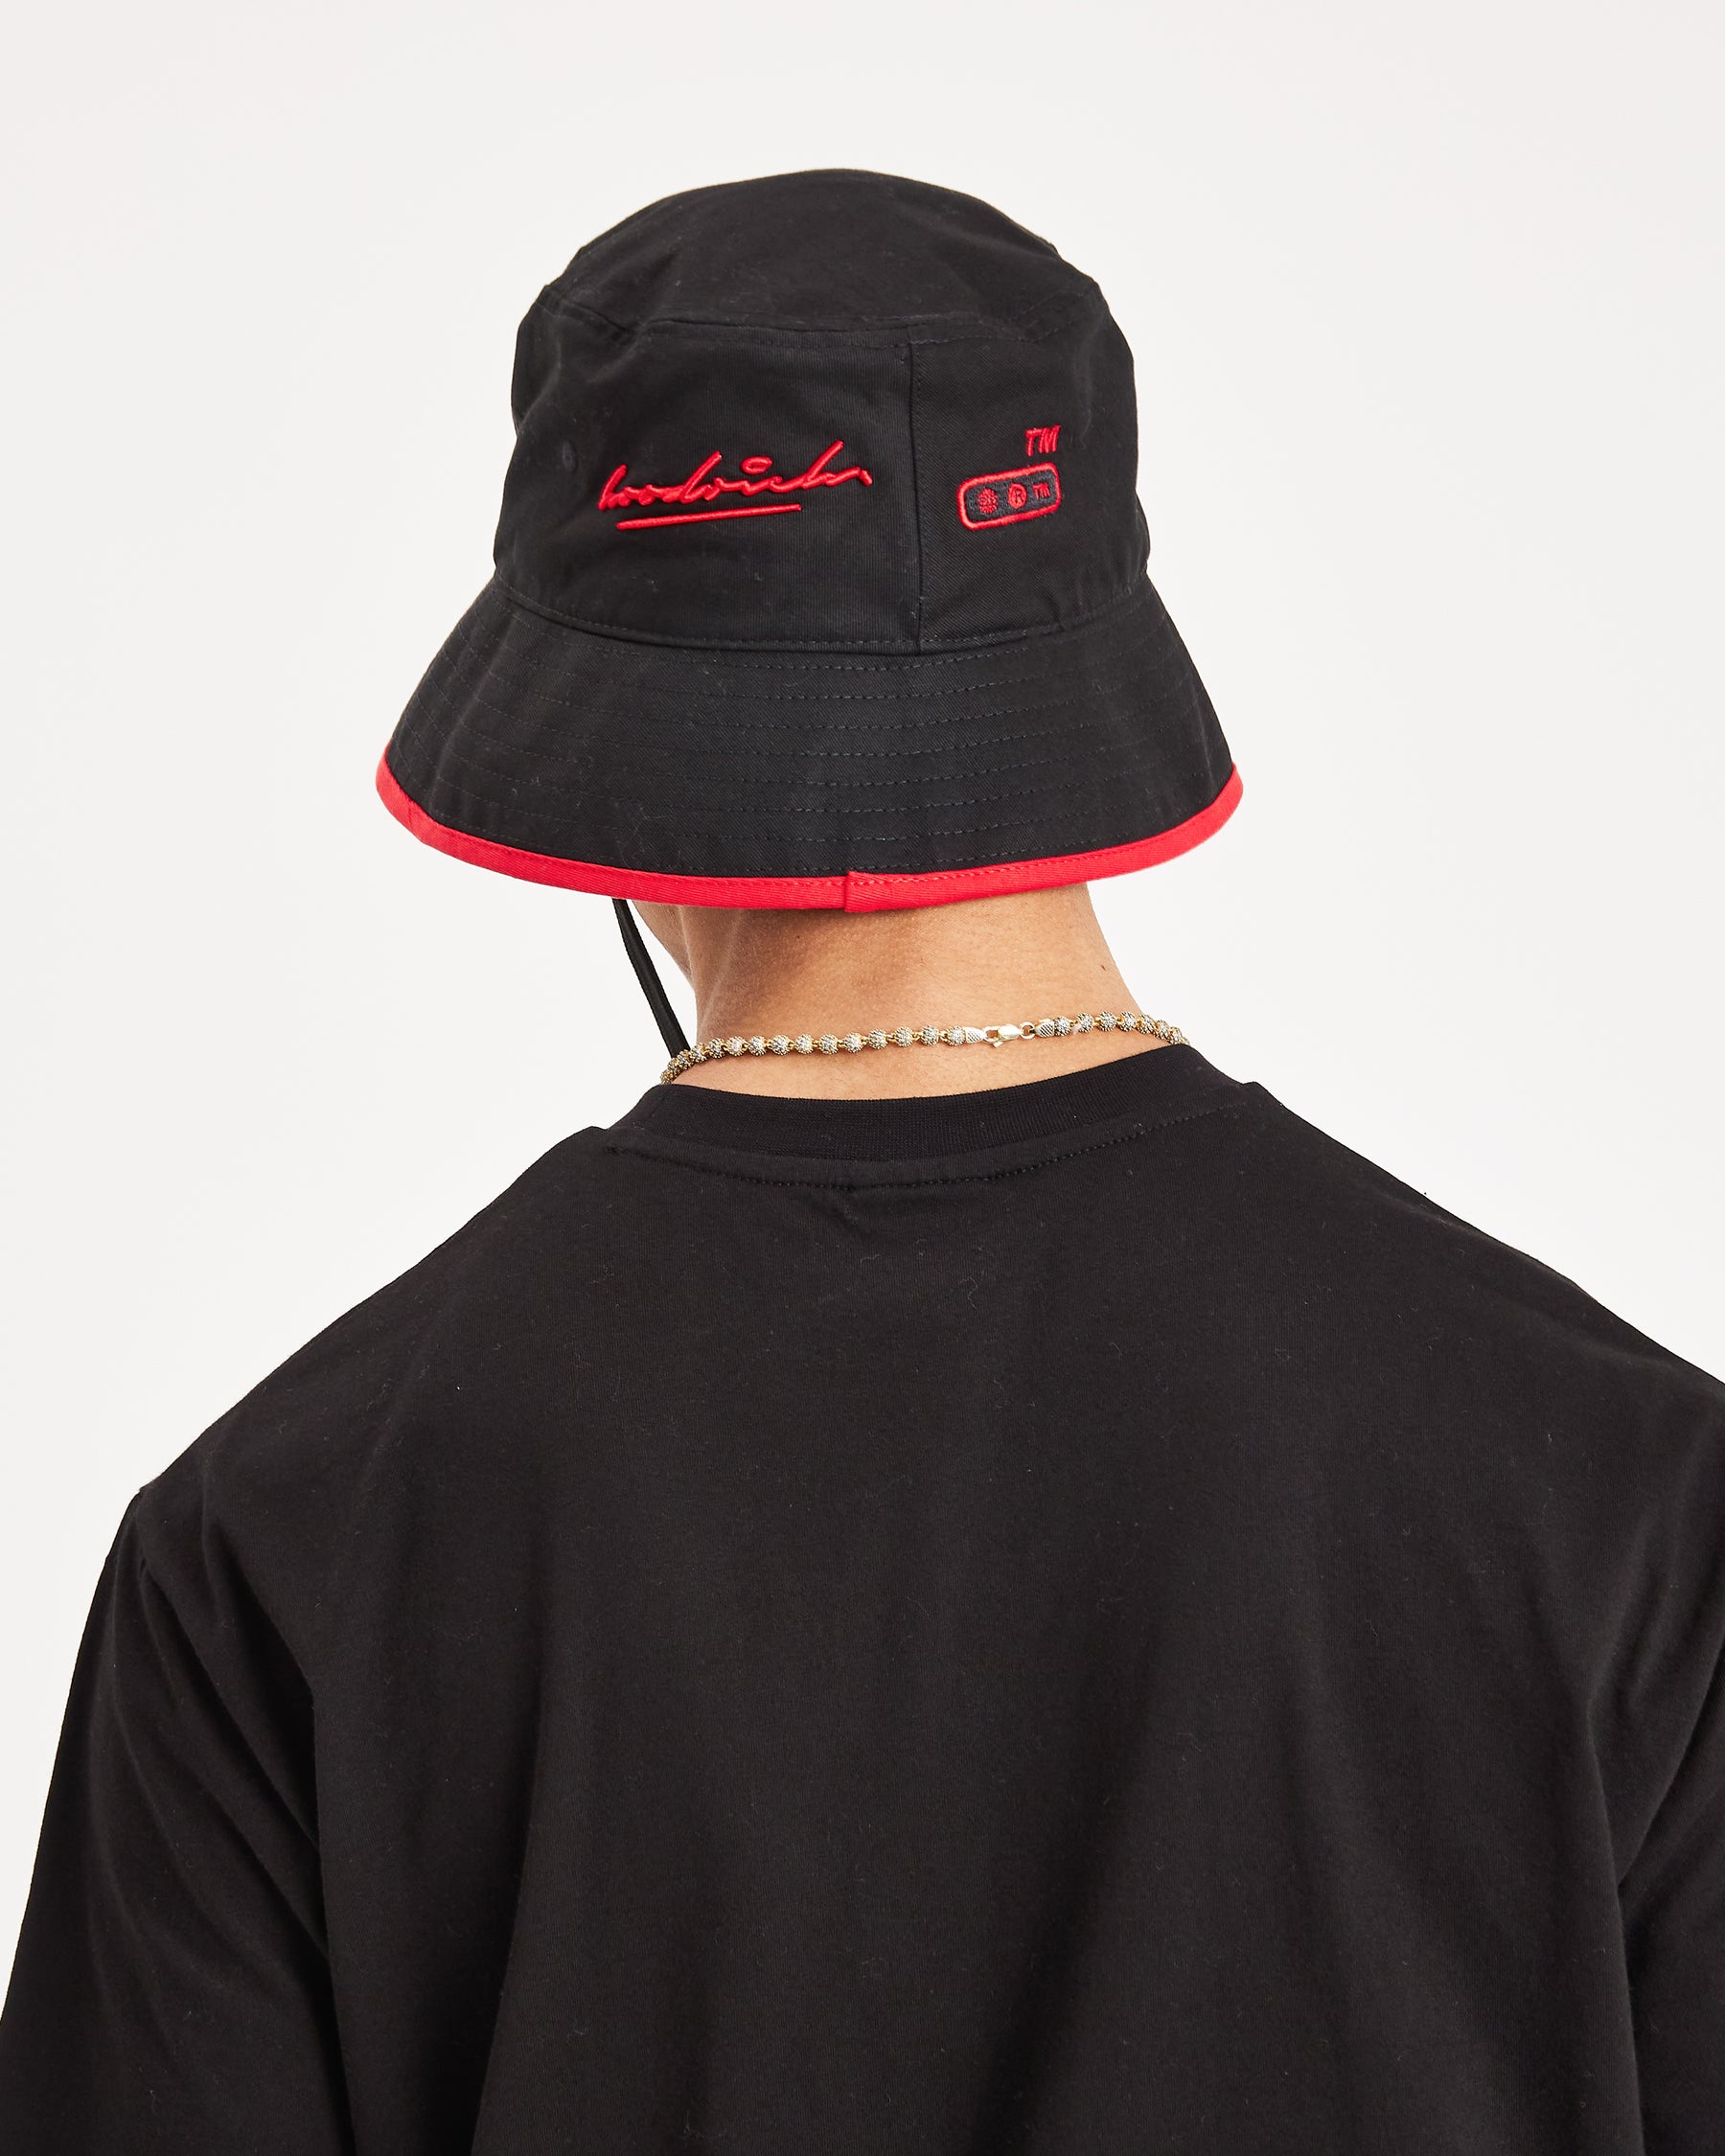 OG Cruzade Bucket Hat - Black/White/Red